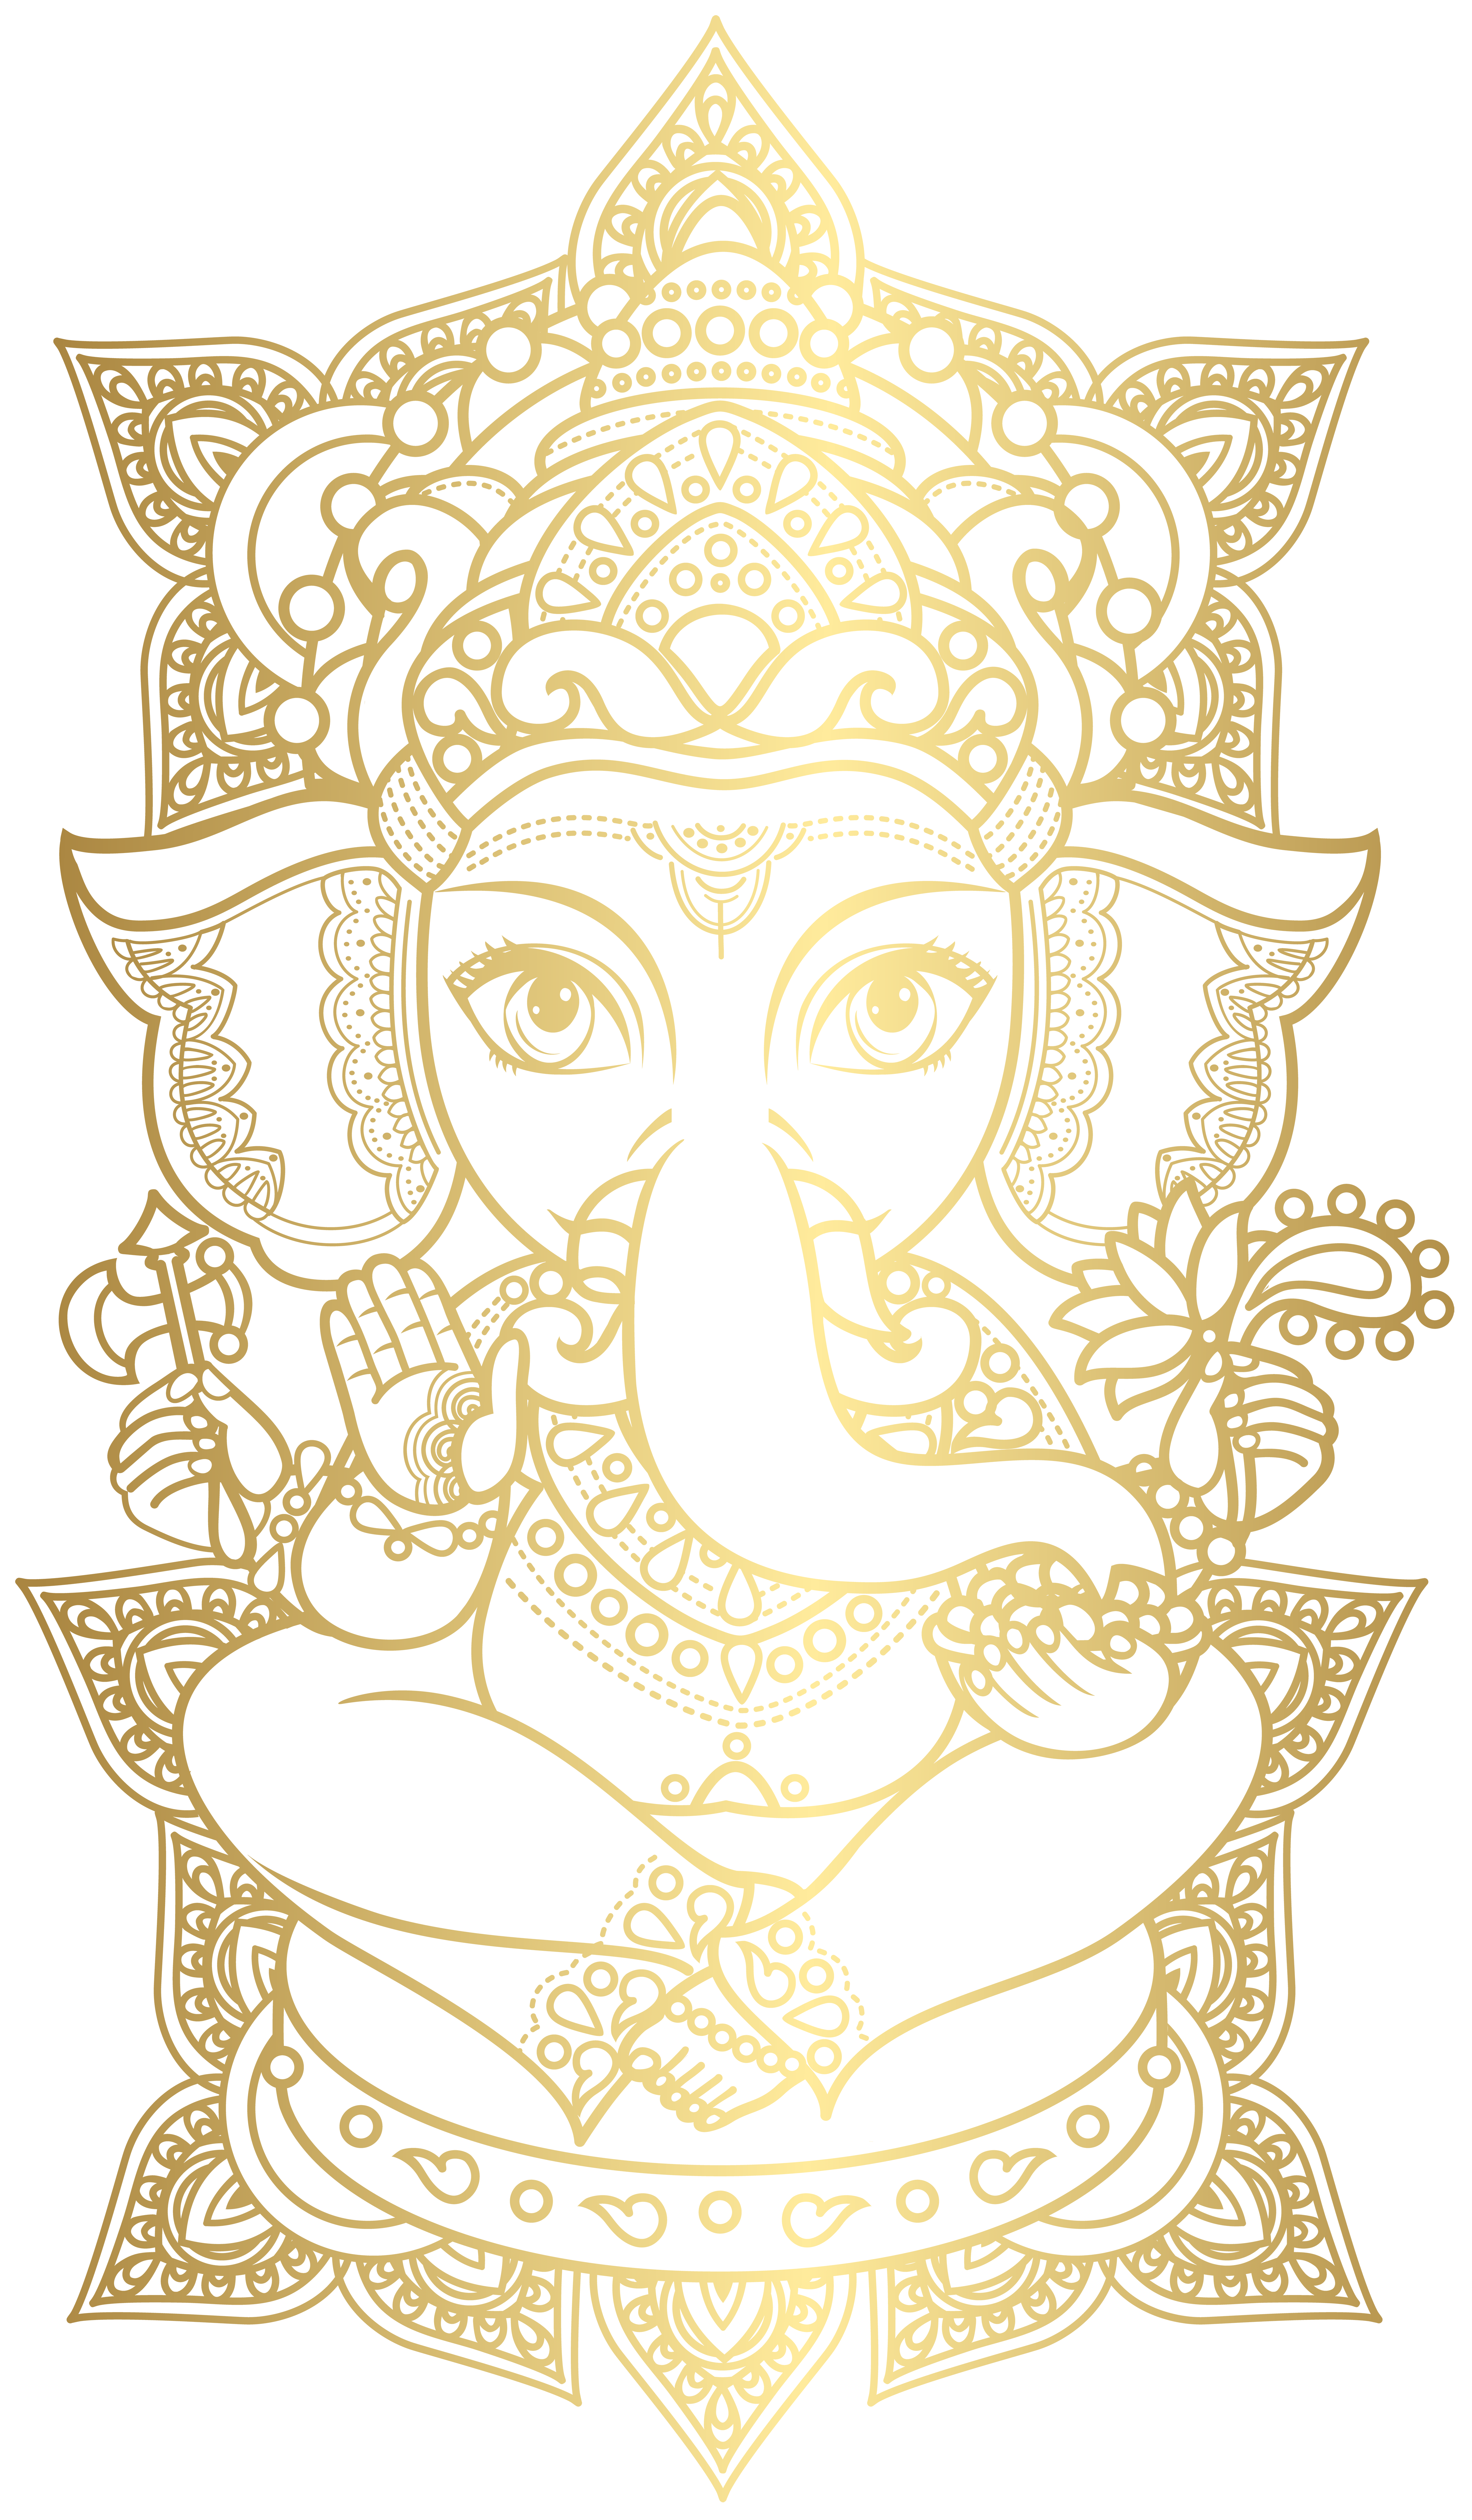 Hình ảnh Ganesha PNG là một trong những tượng đại diện cho sự thông minh, trí tuệ. Với hình dạng đặc trưng và bộ ngũ quả của mình, Ganesha sẽ mang lại nhiều điều tốt đẹp cho bạn. Hãy xem hình ảnh này để tìm hiểu thêm về niềm tin và văn hóa Ấn Độ độc đáo.